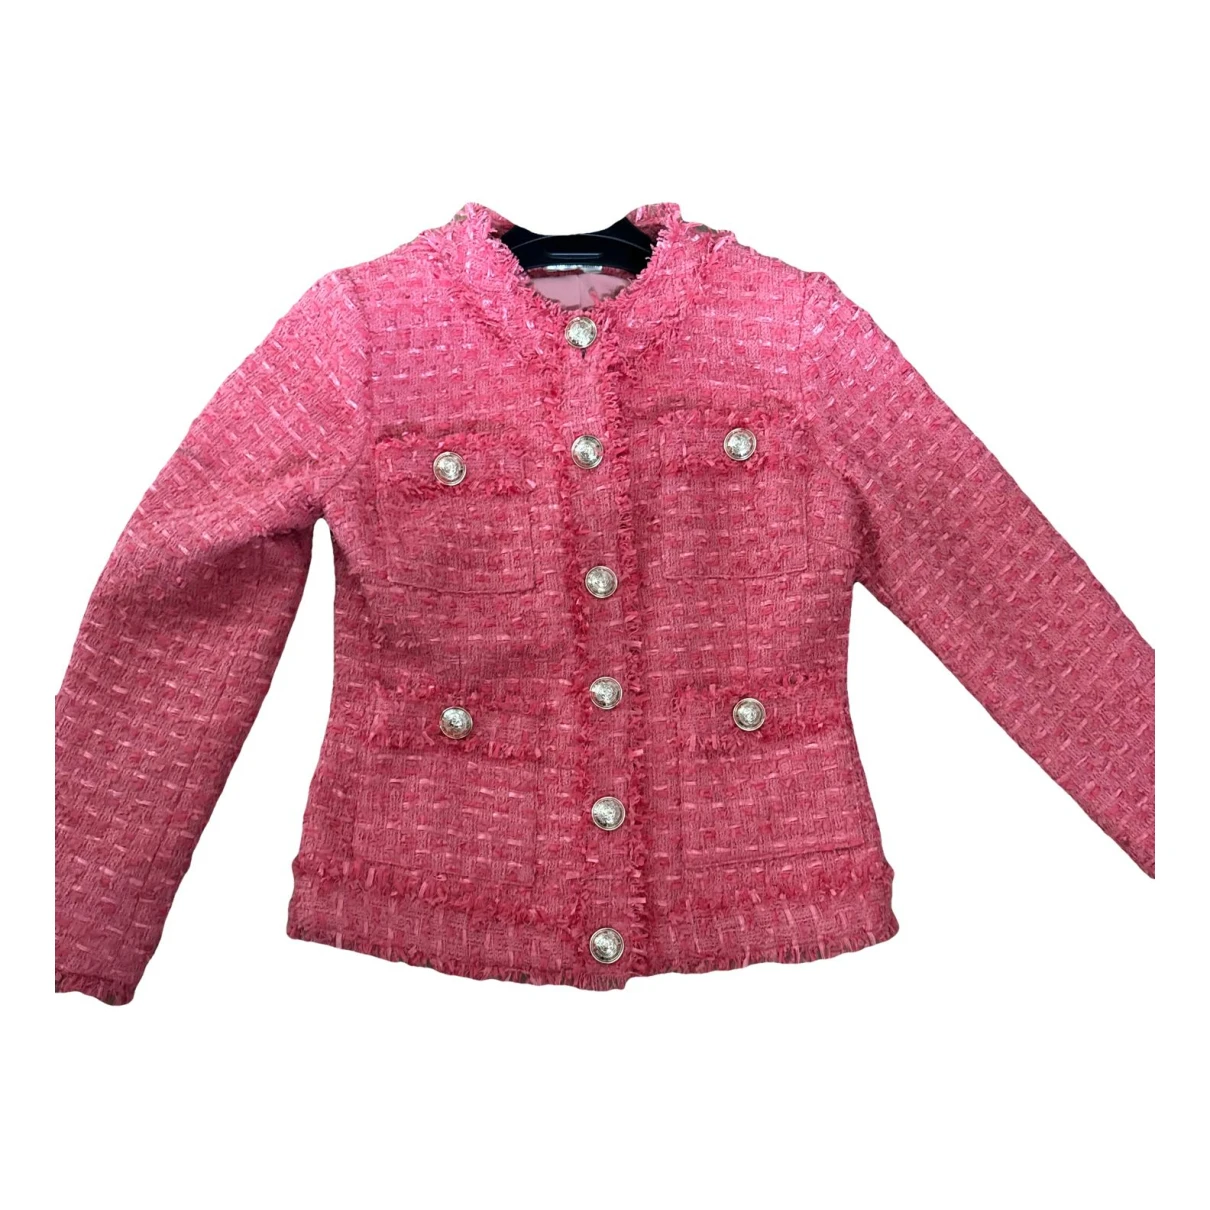 Pre-owned Balmain Wool Blazer In Pink